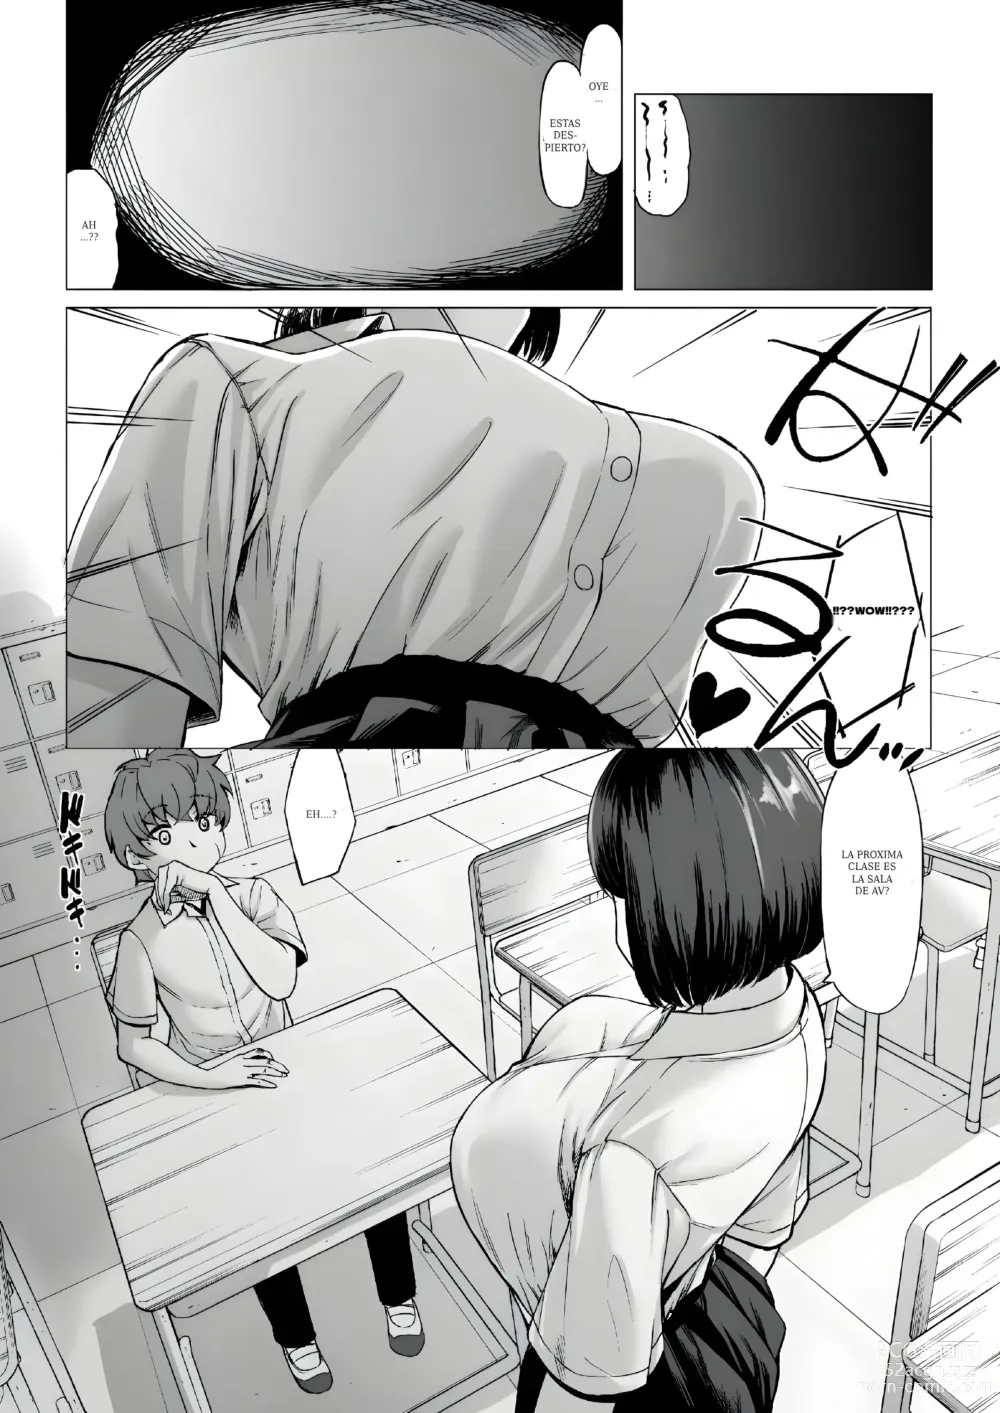 Page 10 of doujinshi Mi virginidad fue robada mientras dormia